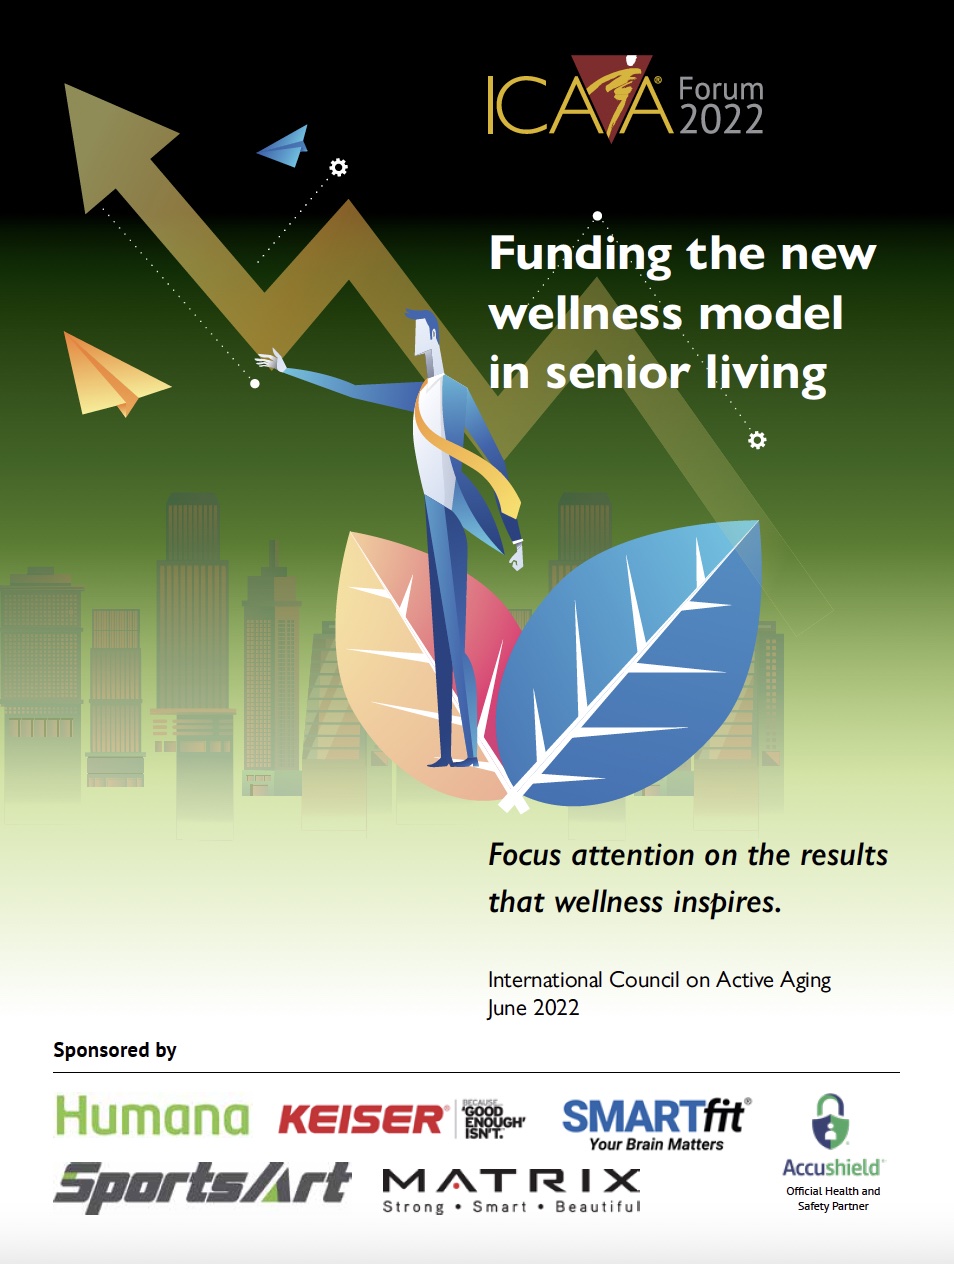 ICAA Forum, June 2022: Funding the new wellness model in senior living